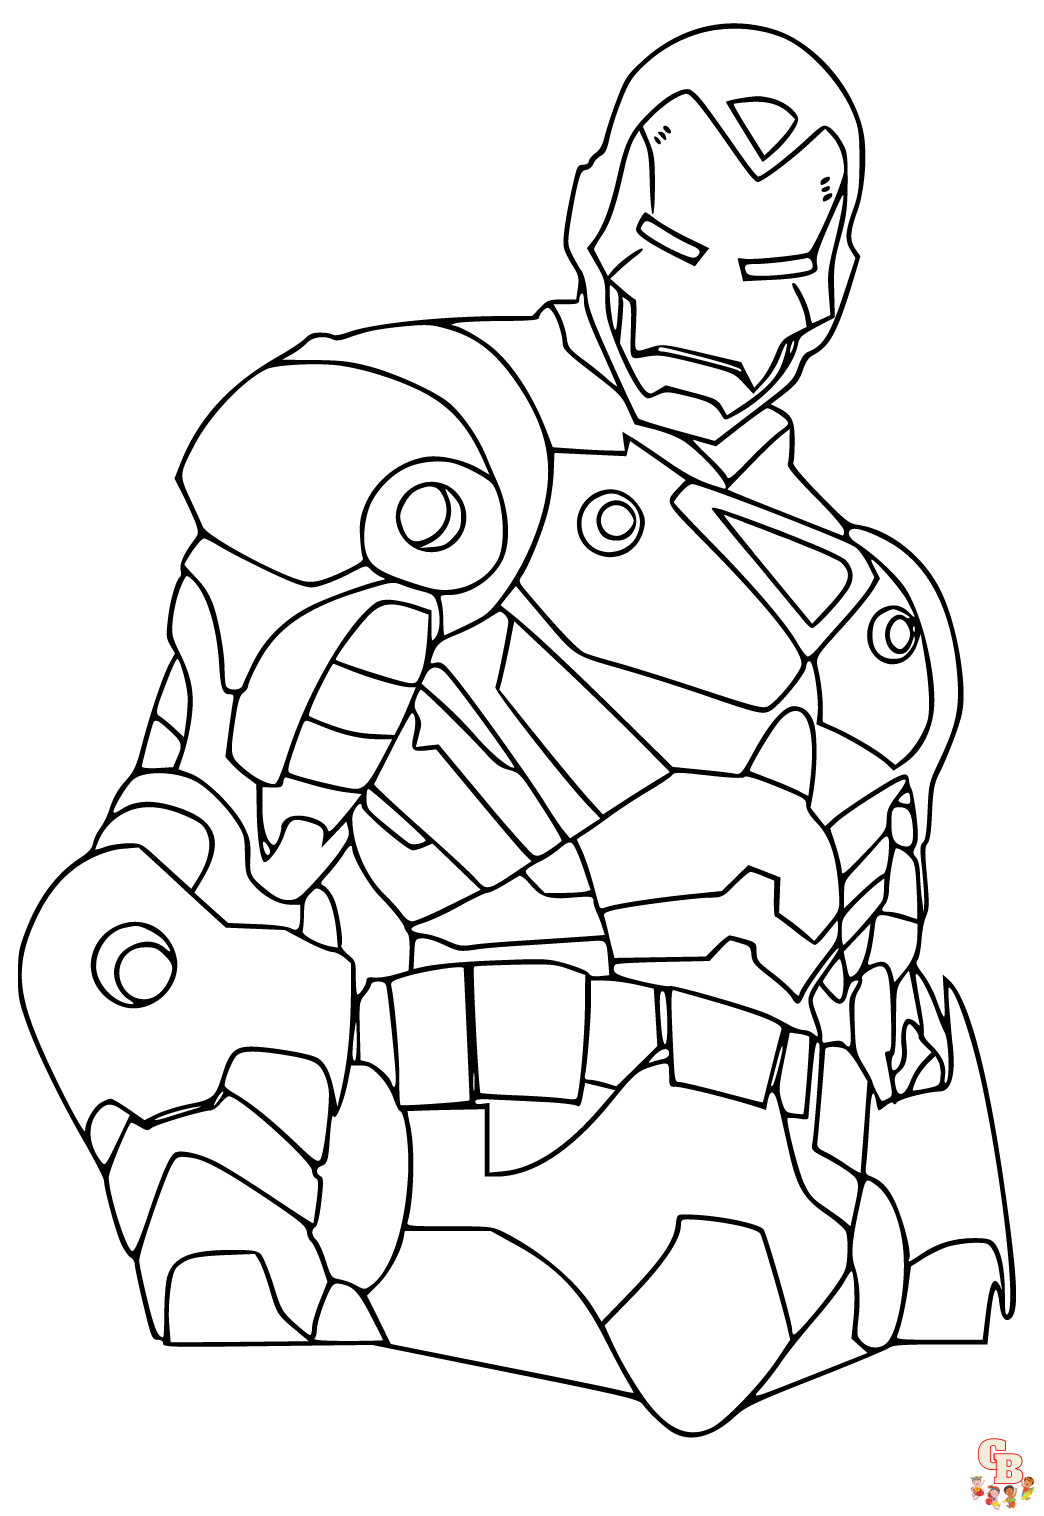 Coloriage Iron Man Les dessins à colorier les plus populaires en ligne